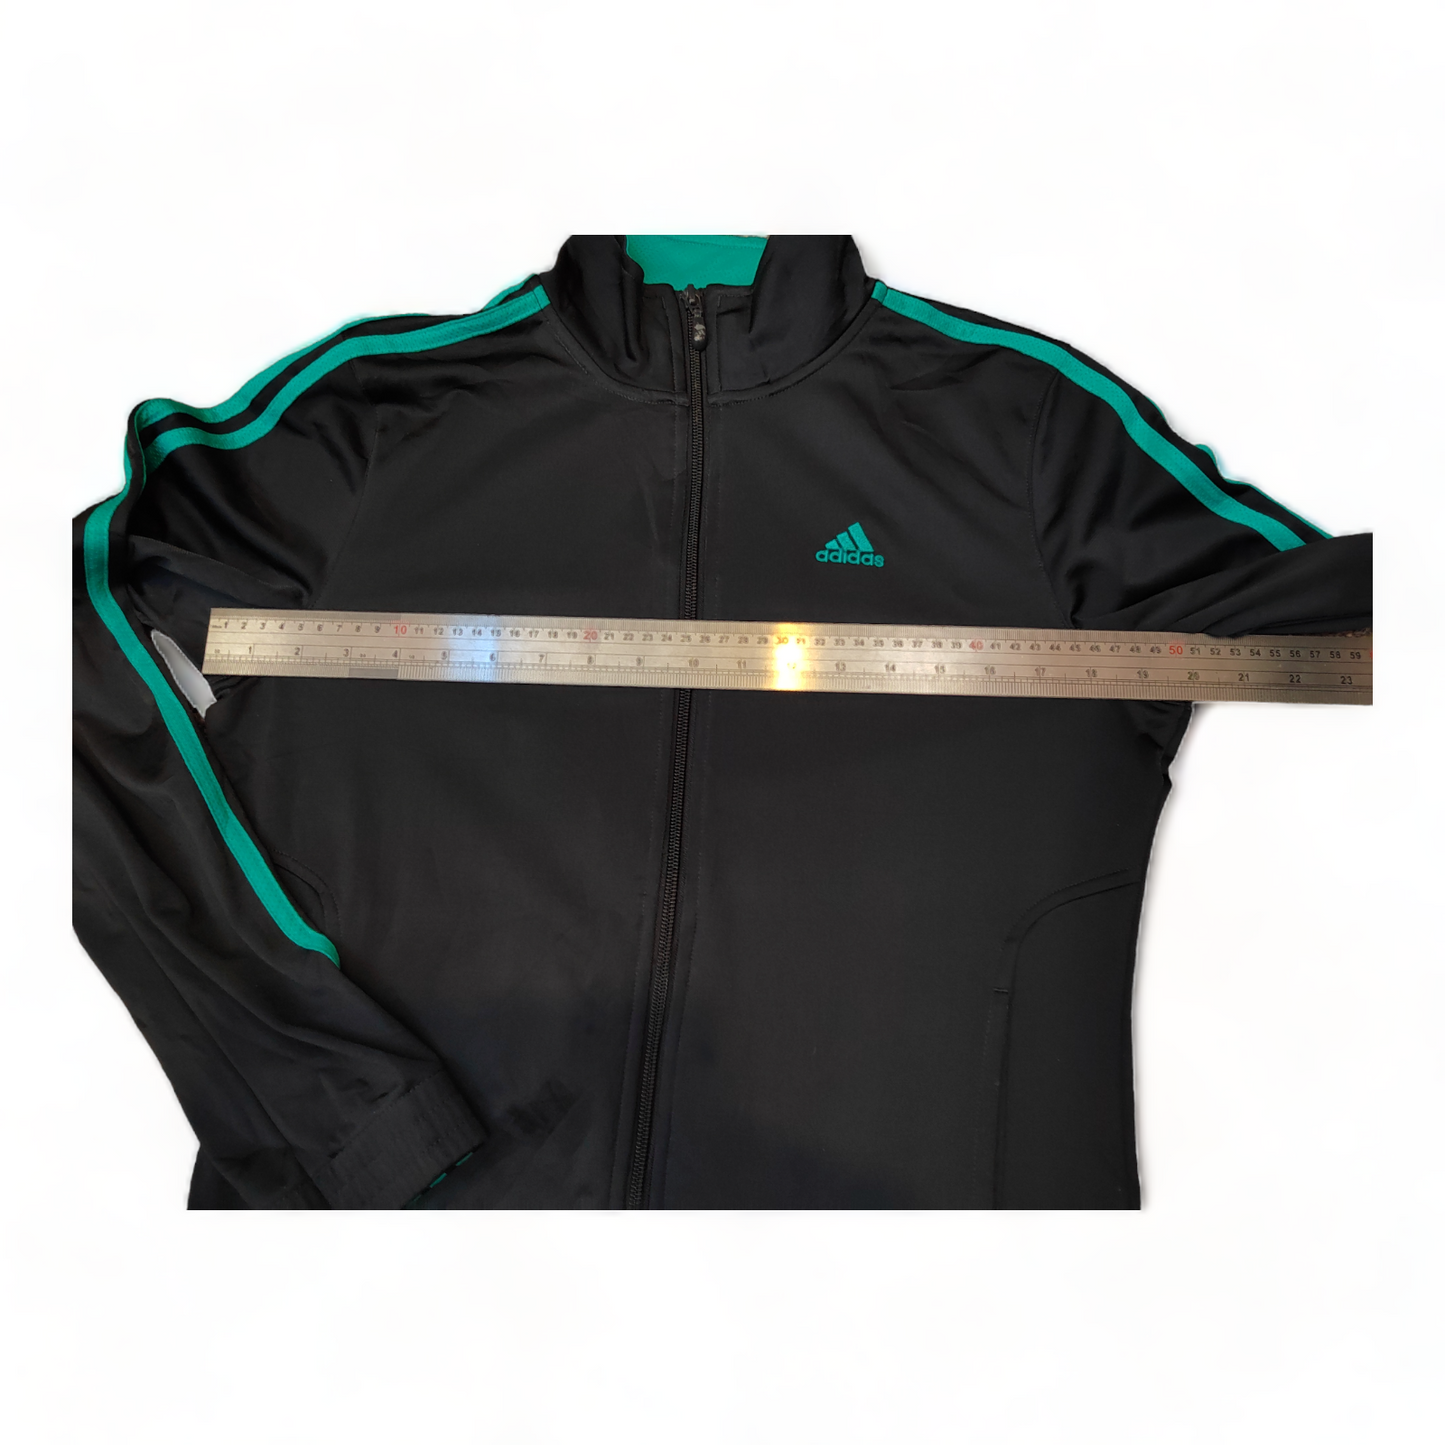 Adidas Mens Jumper Small / Medium Black Zip Up Sweatshirt